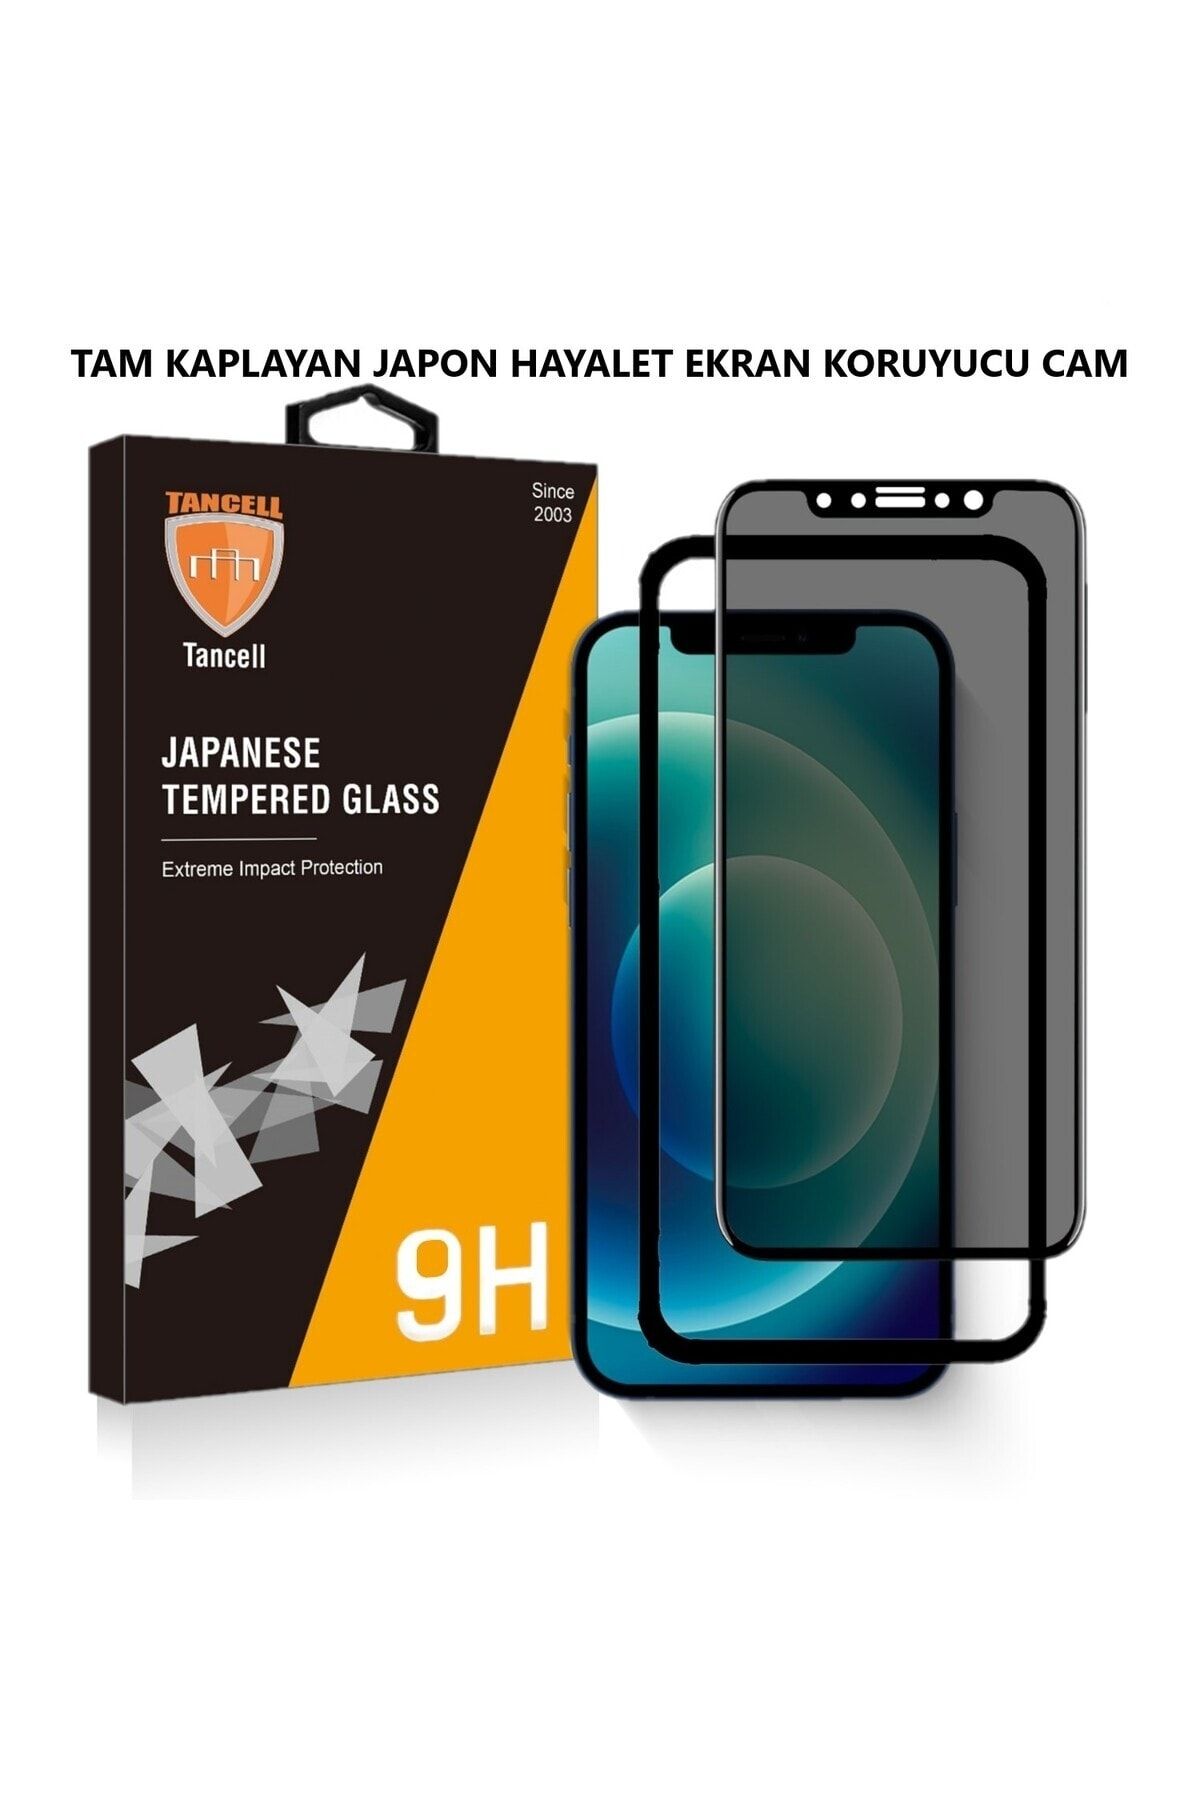 TANCELL İphone 12 Pro Max Uyumlu Hayalet Ekran Koruyucu Tam Kaplayan Japon Kırılmaz Cam 6,7 Inc (2 ADET)